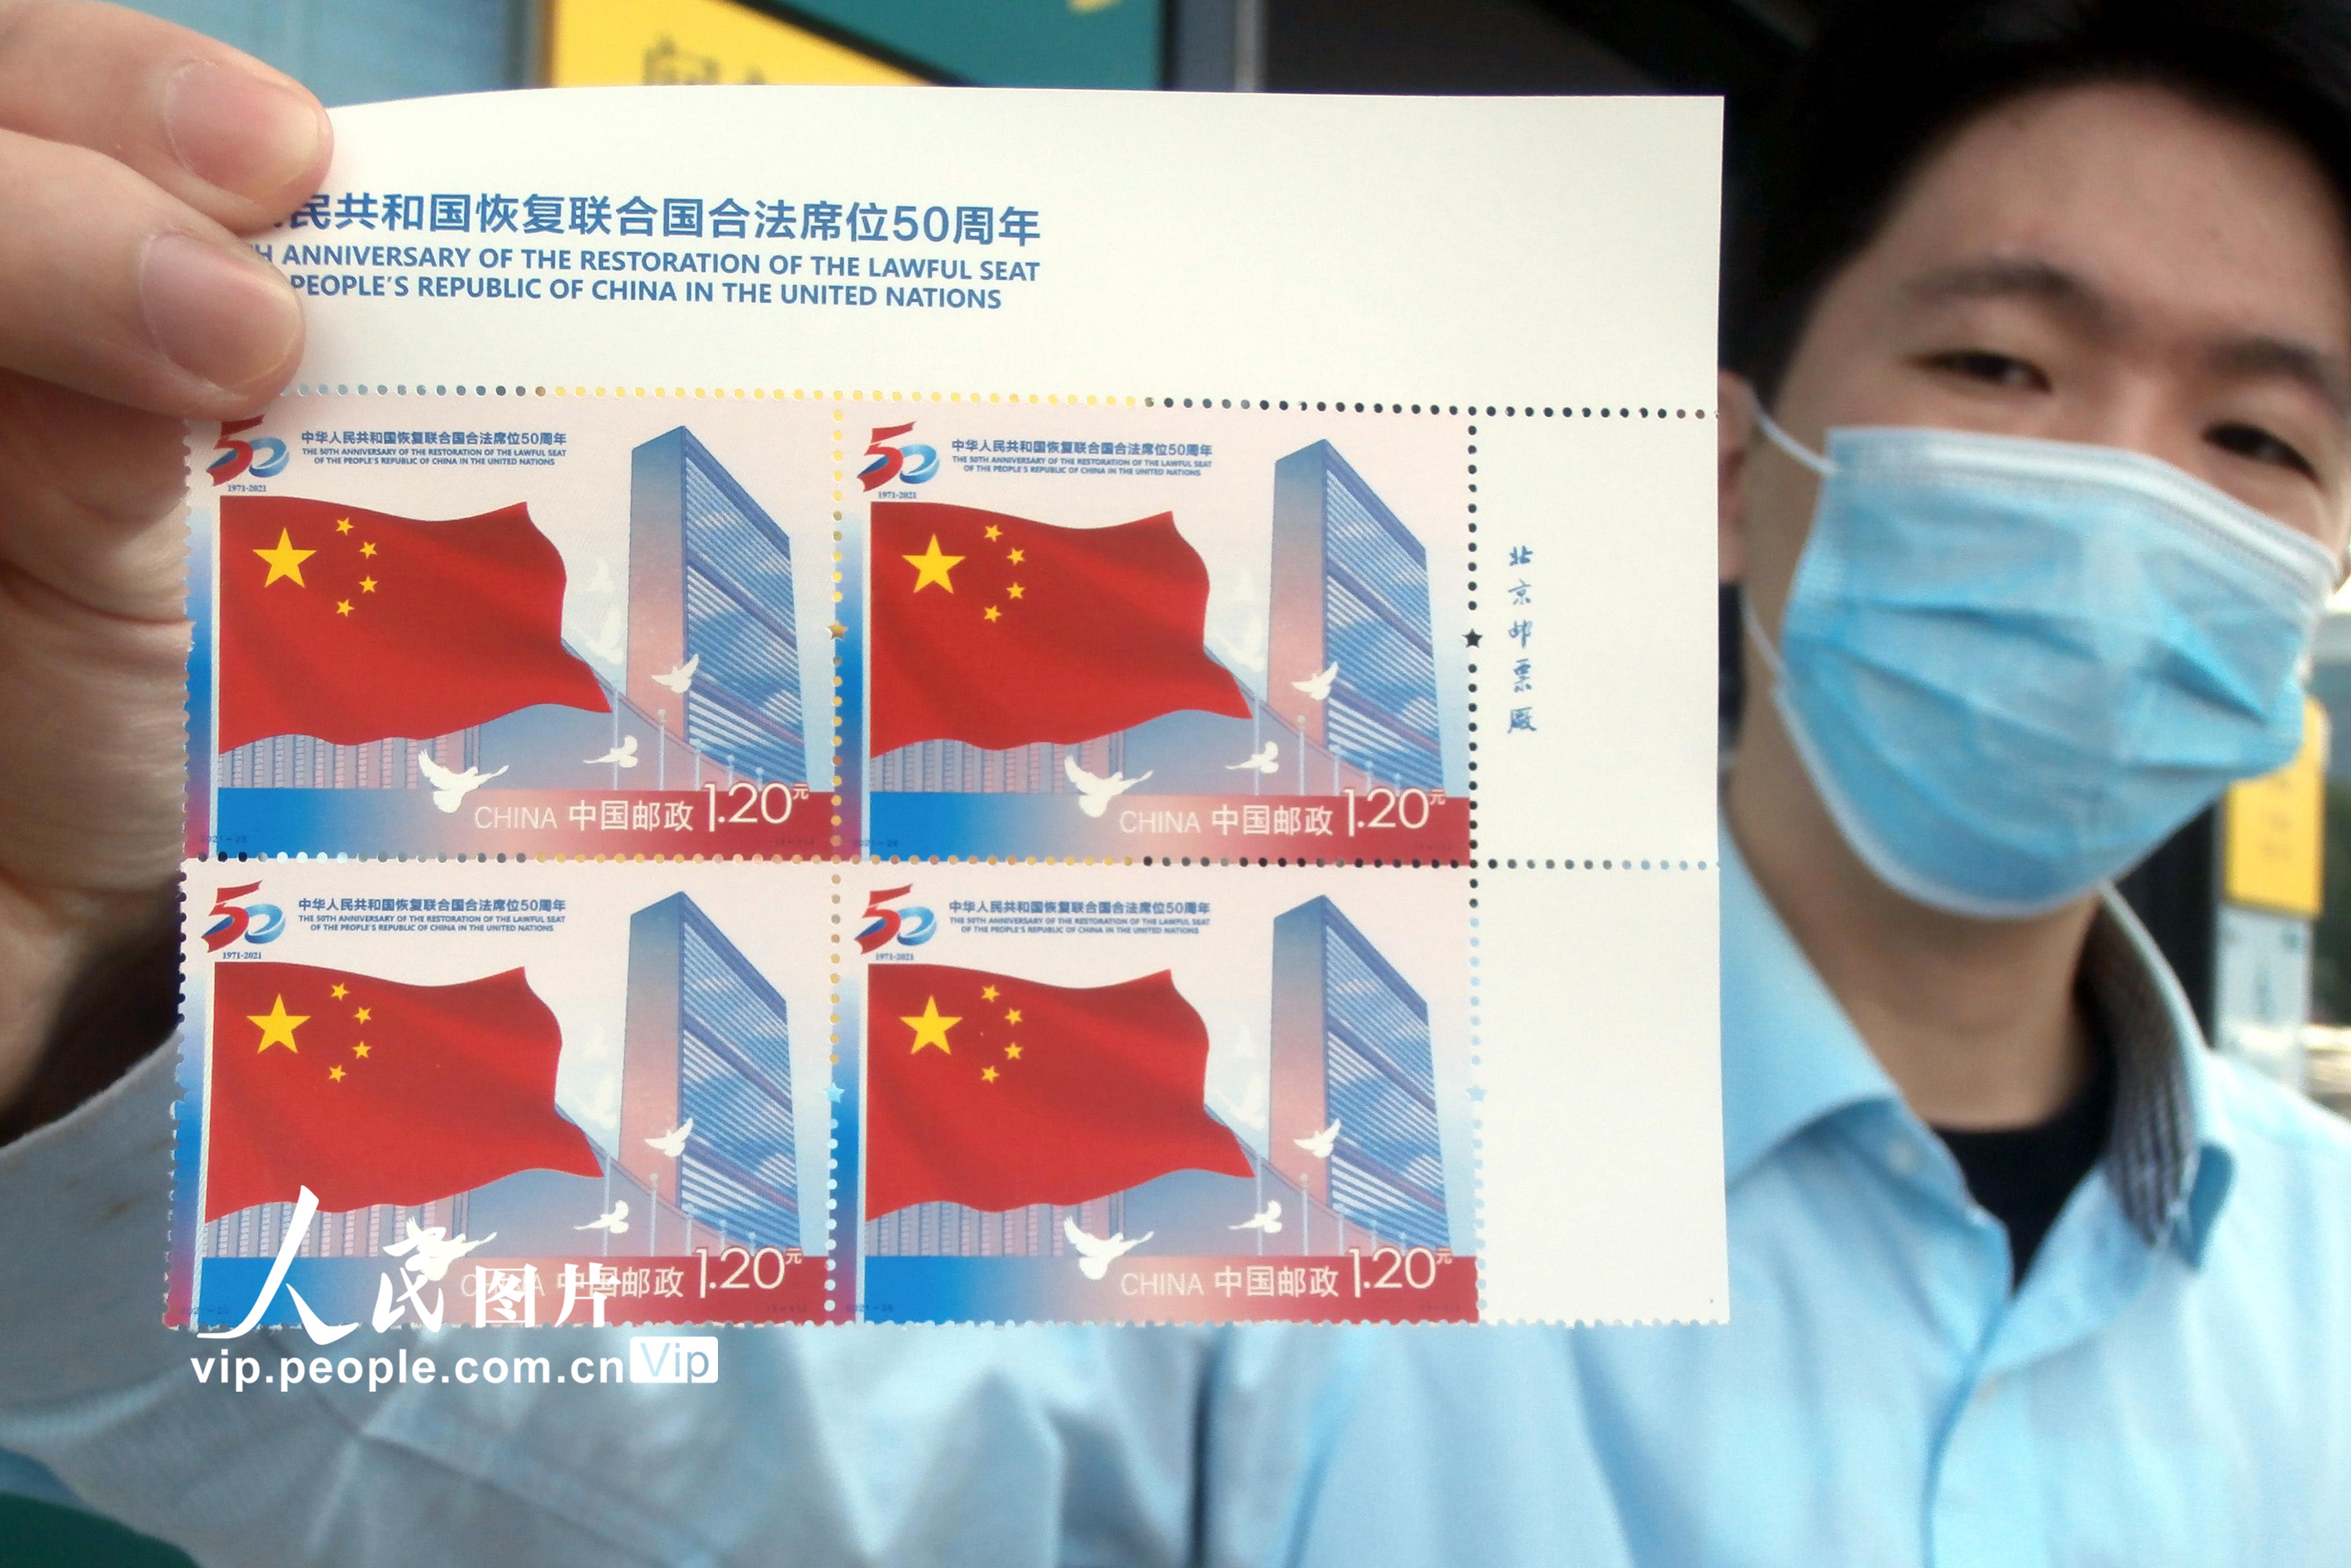 中國郵政發行《中華人民共和國恢復在聯合國合法席位50周年》紀念郵票【2】